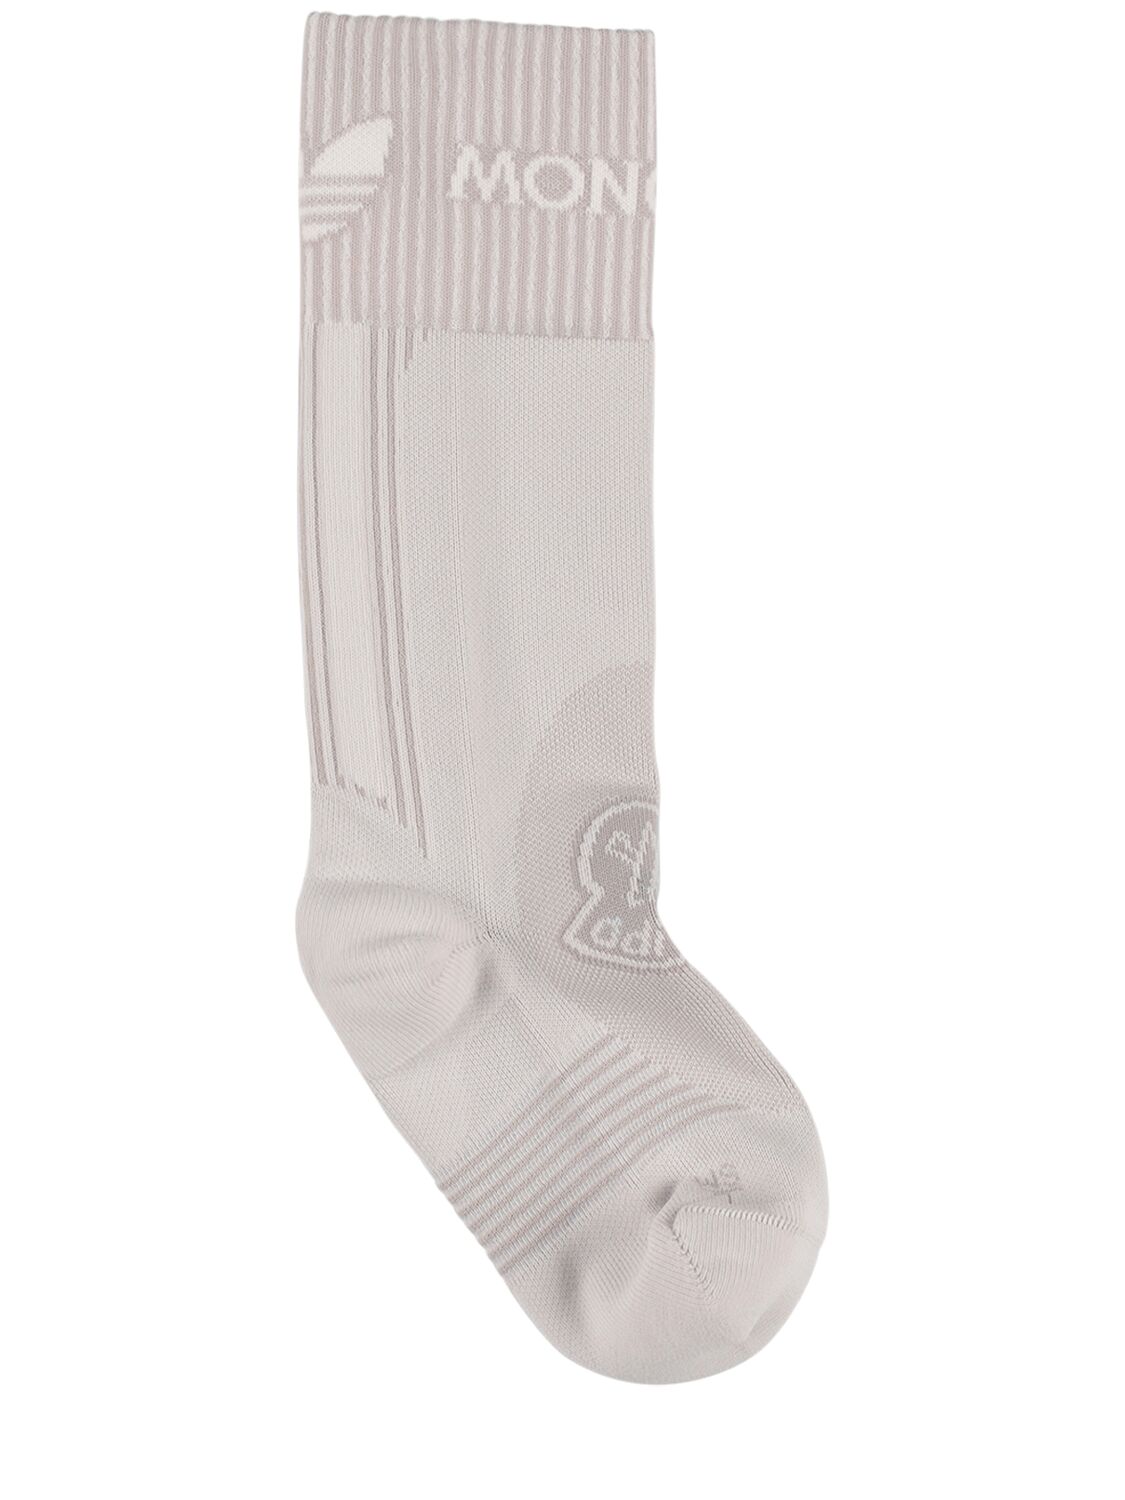 Moncler Genius Moncler X Adidas Tech Socks In Optic White